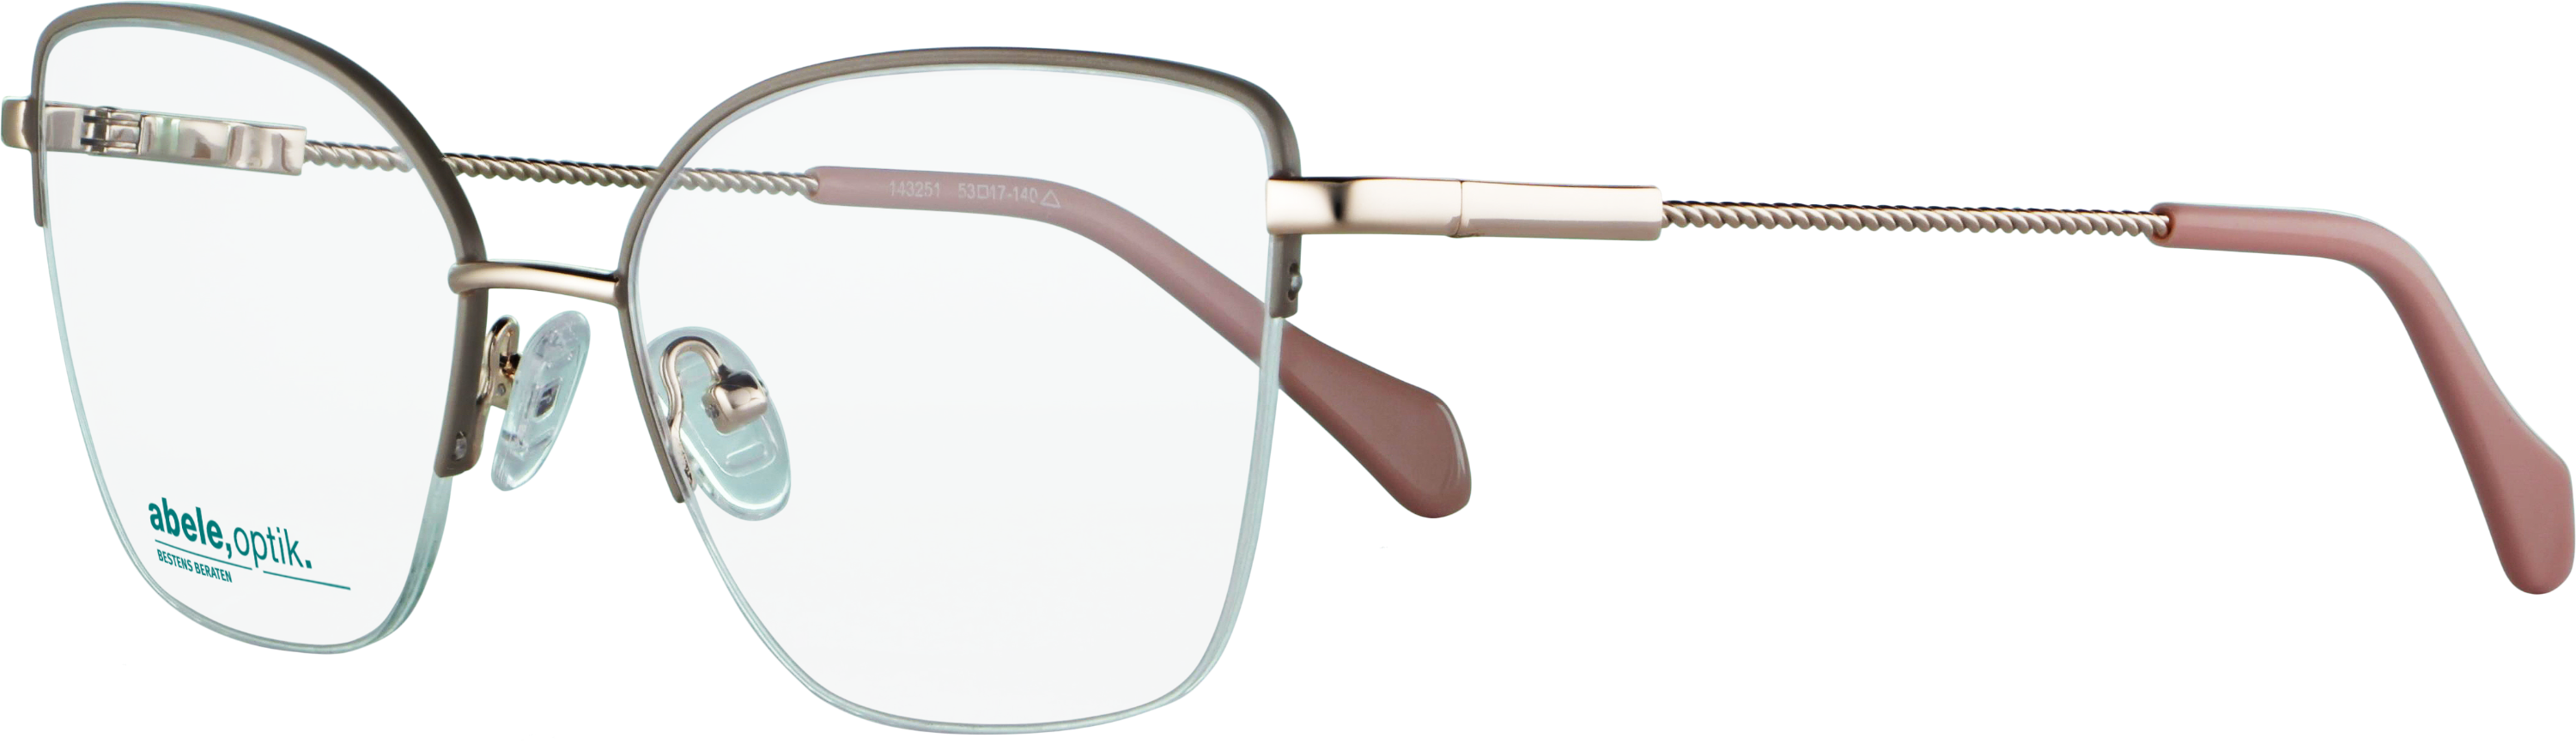 Das Bild zeigt die Korrektionsbrille 143251 von der Marke Abele Optik in grau beige.